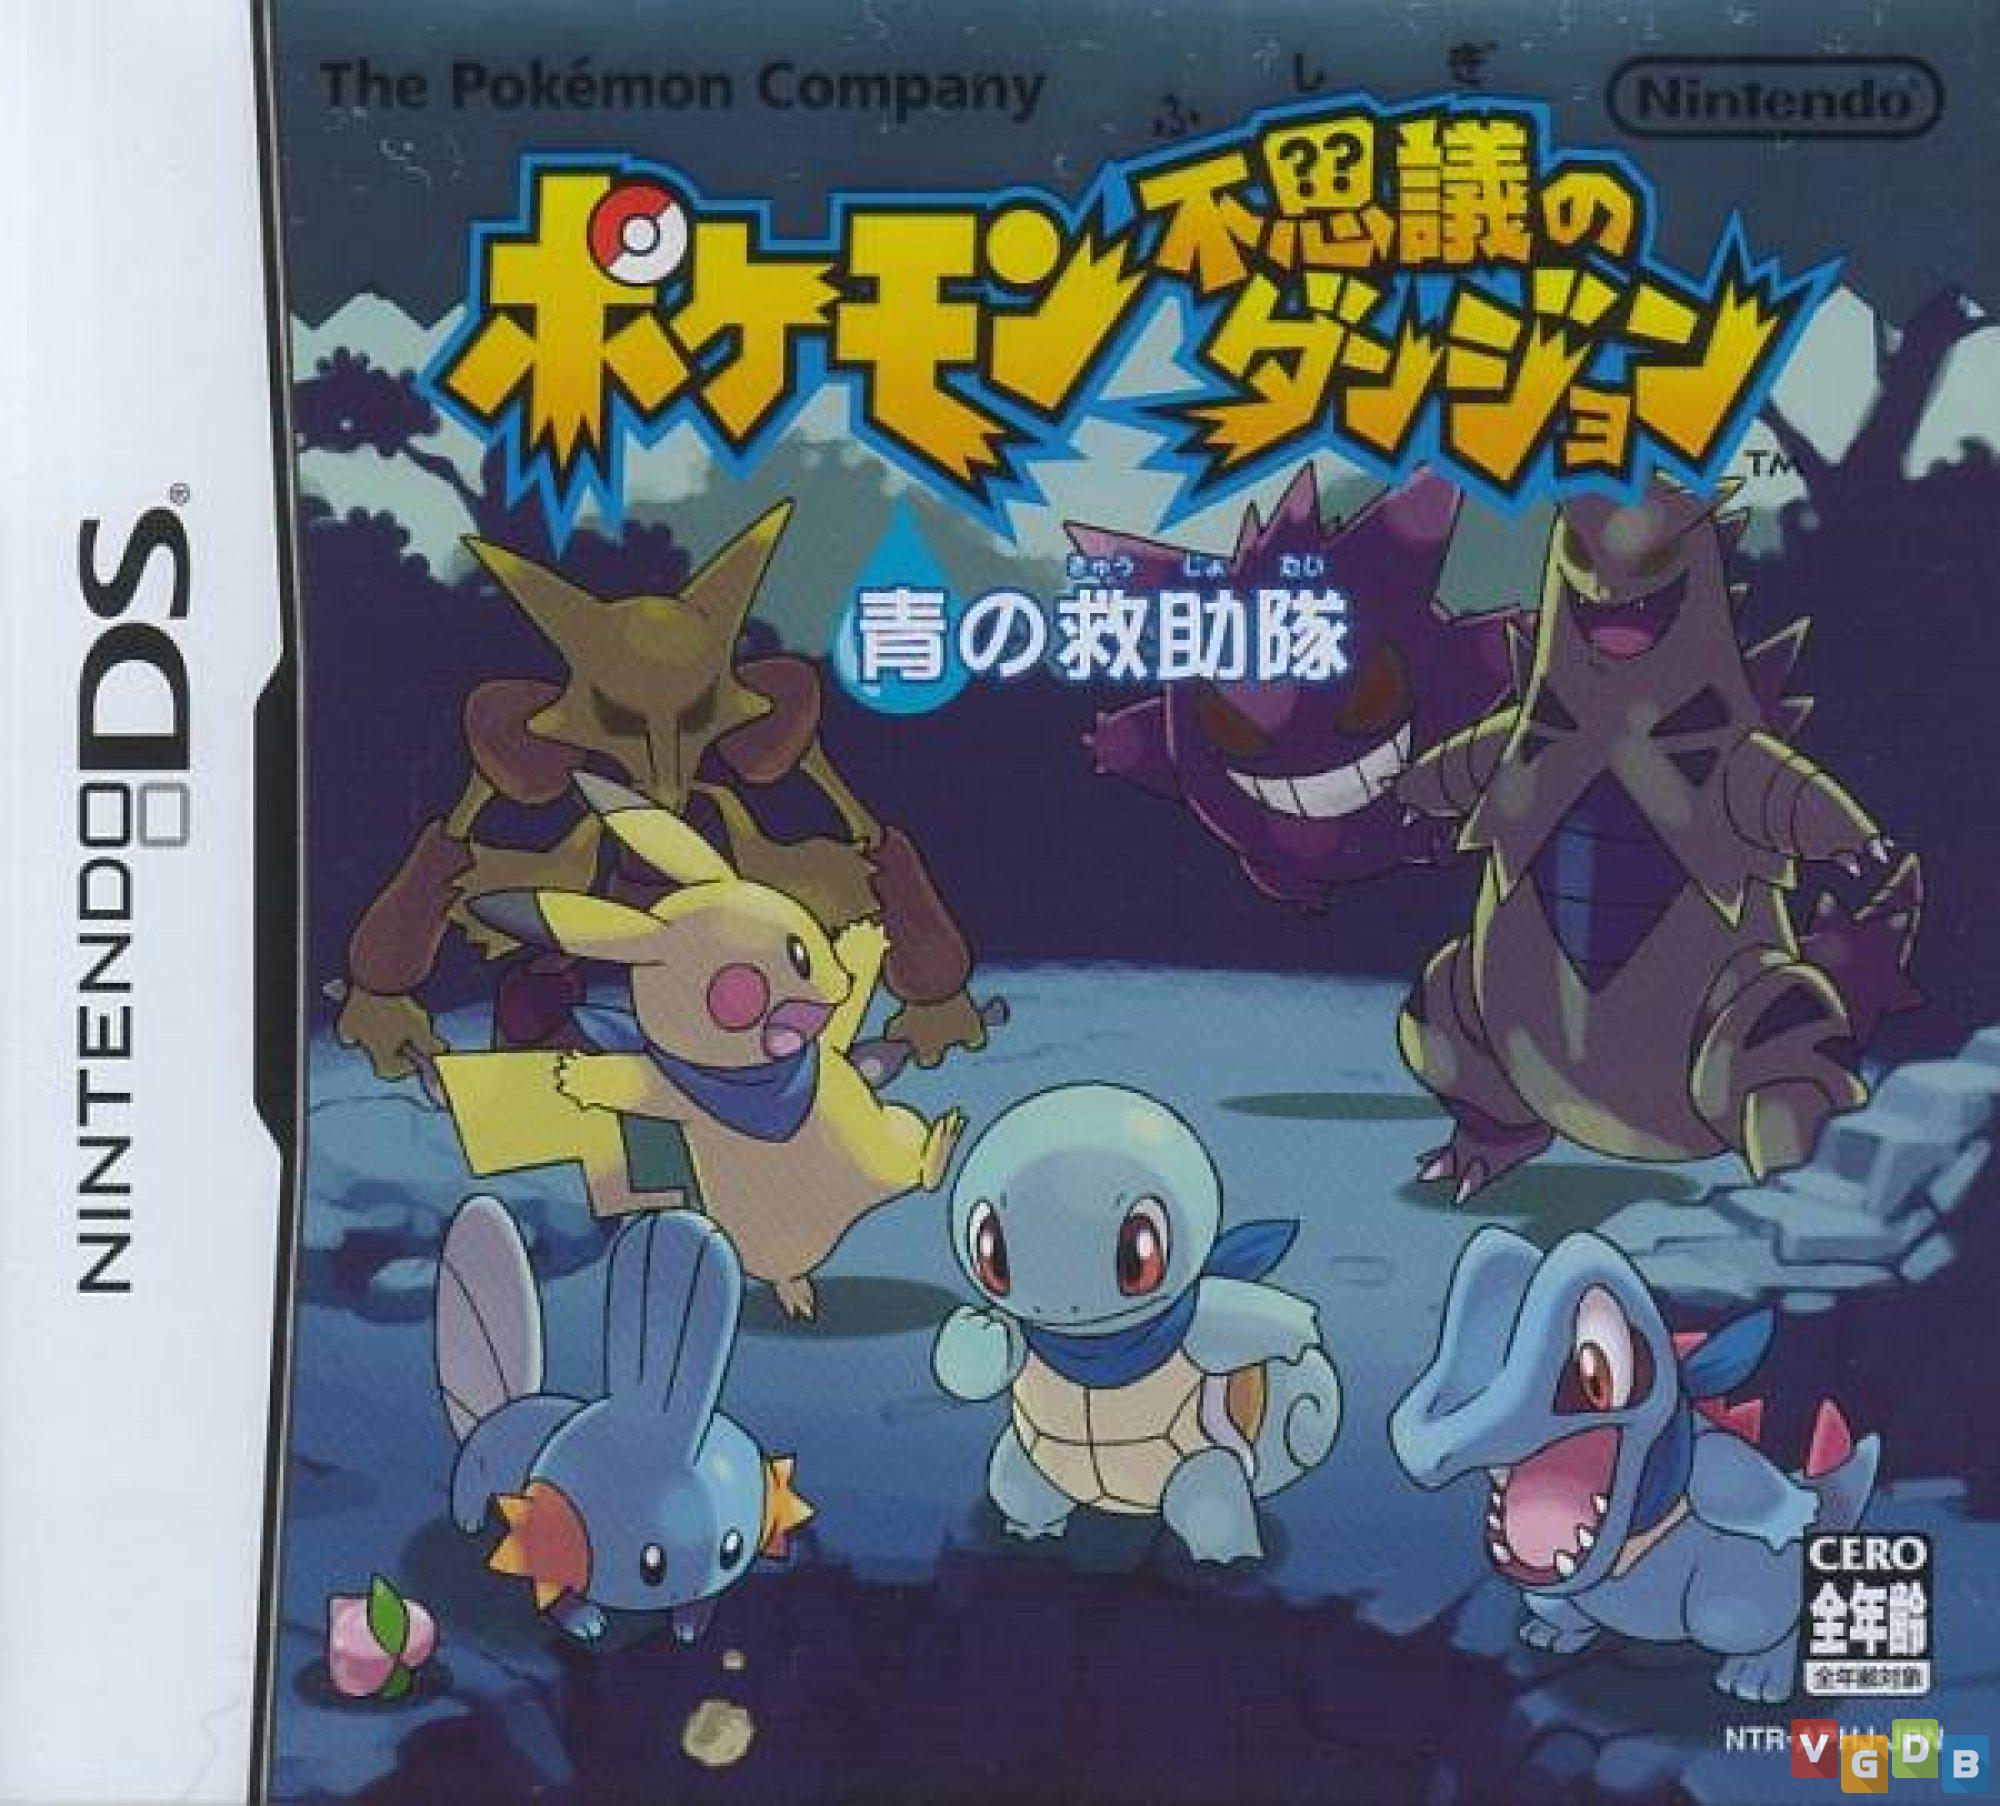 Em Pokémon Mystery Dungeon: Red/Blue Rescue Team (GBA/DS), descubra o seu  lado Pokémon - Nintendo Blast